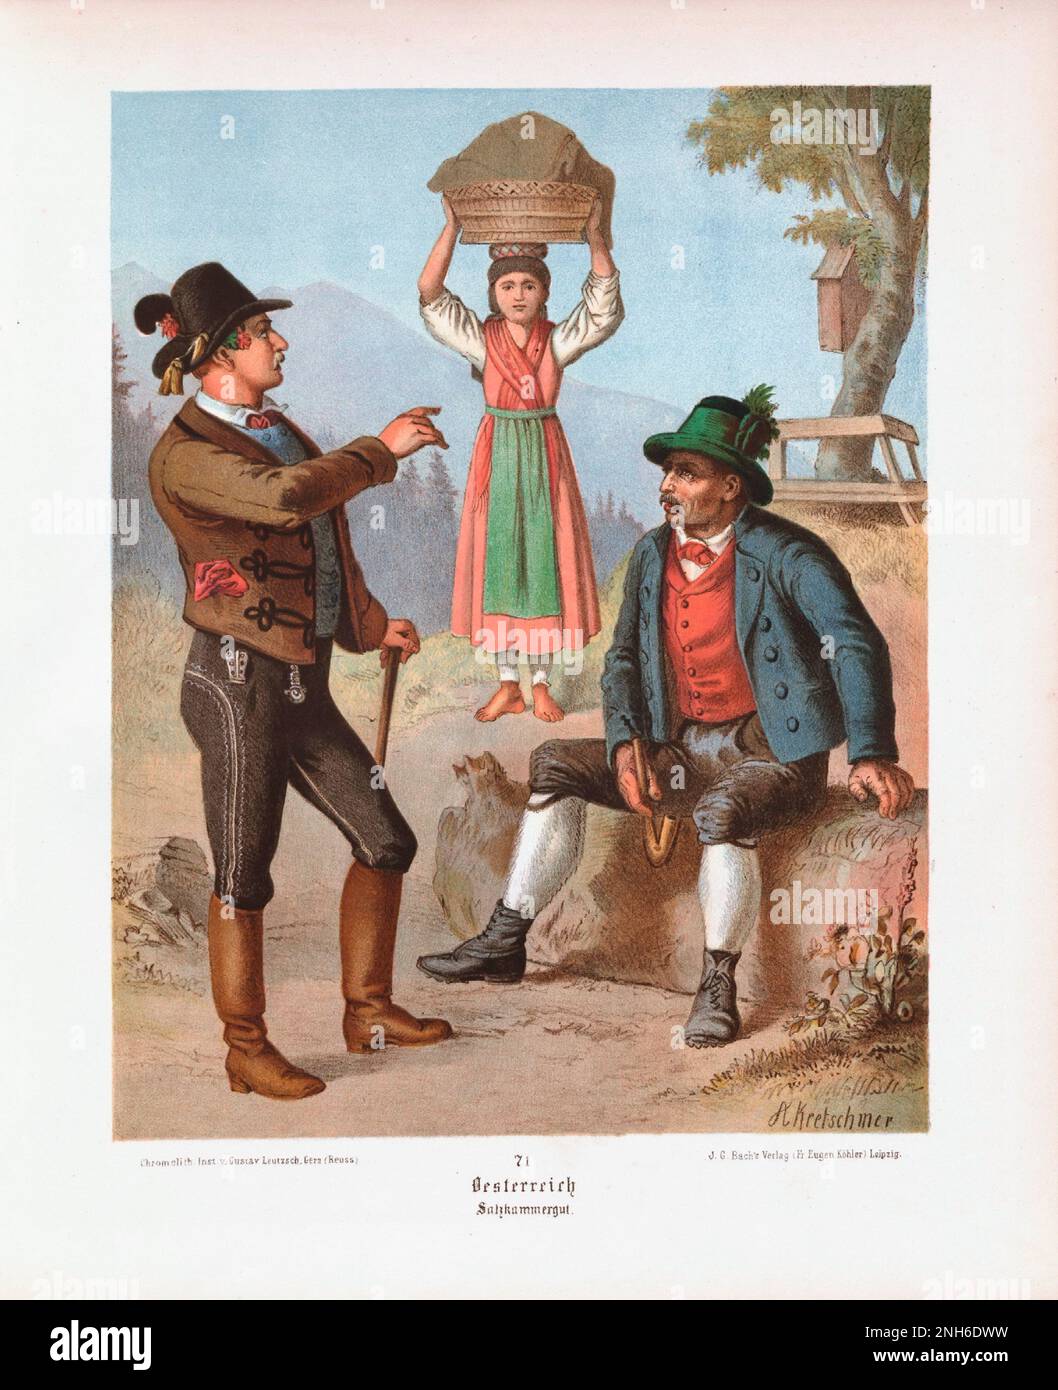 Deutsches Volkskleid. Österreich (Geramn: Österreich), Salzkammergut. Lithographie des 19. Jahrhunderts. Stockfoto